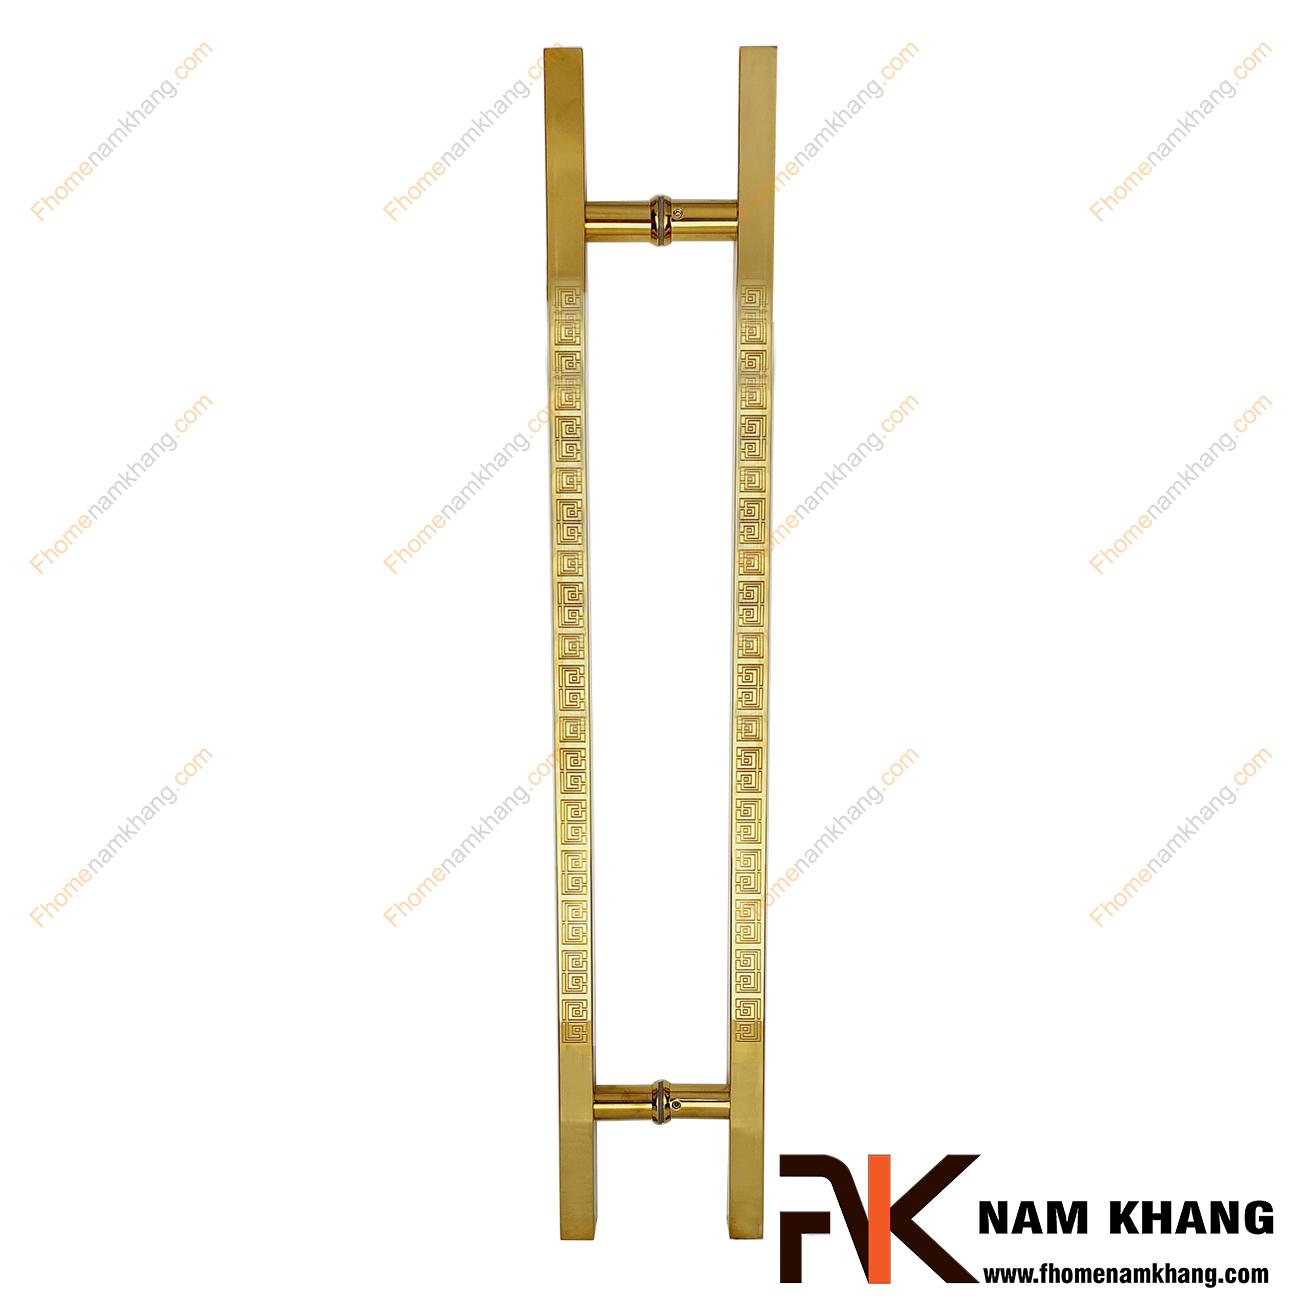 Tay nắm cửa chính dạng thanh vuông chữ vạn NK901-V201 là dạng tay nắm cao cấp sử dụng cho mọi loại cửa với nhiều chất liệu từ gỗ, kính, nhôm,...